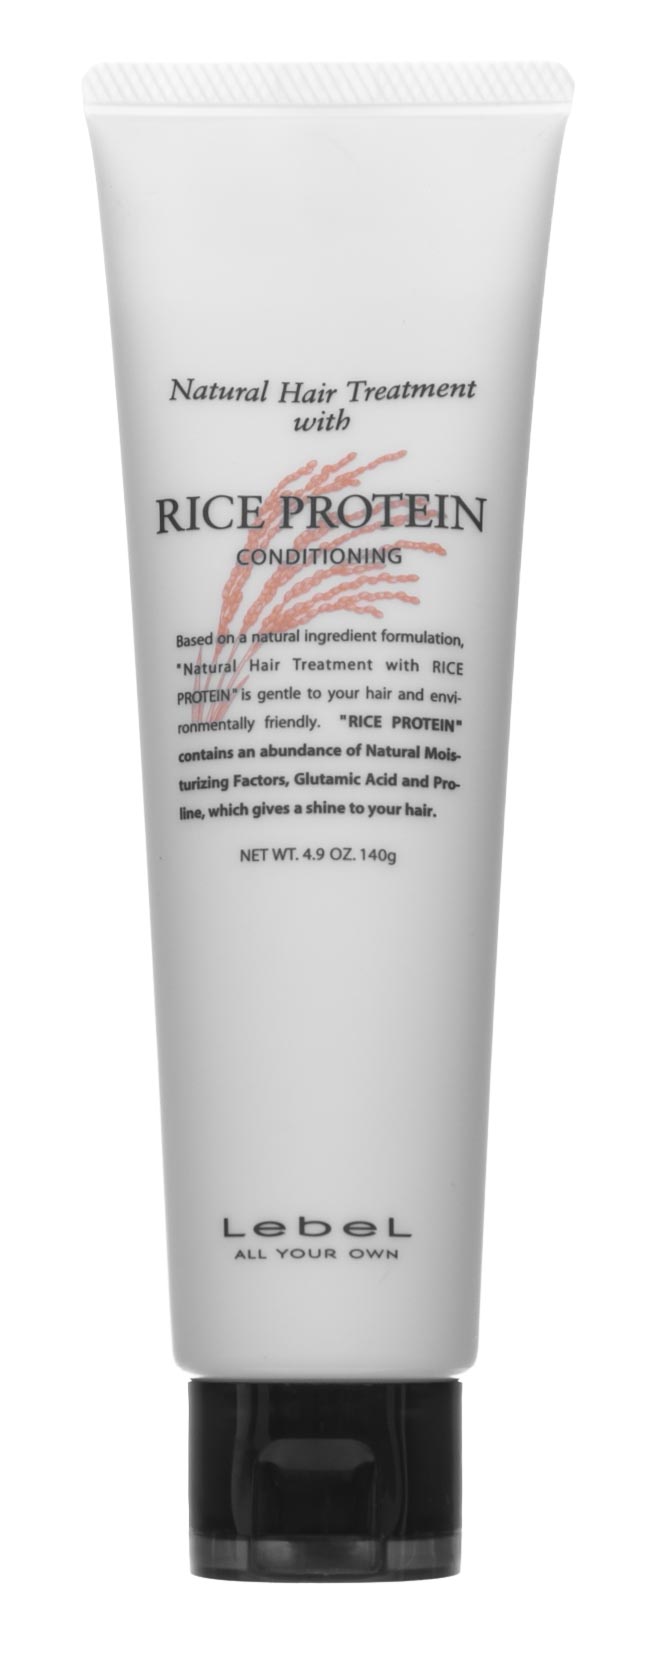 Lebel Восстанавливающая маска для волос Rice Protein, 140 г (Lebel, Натуральная серия) цена и фото